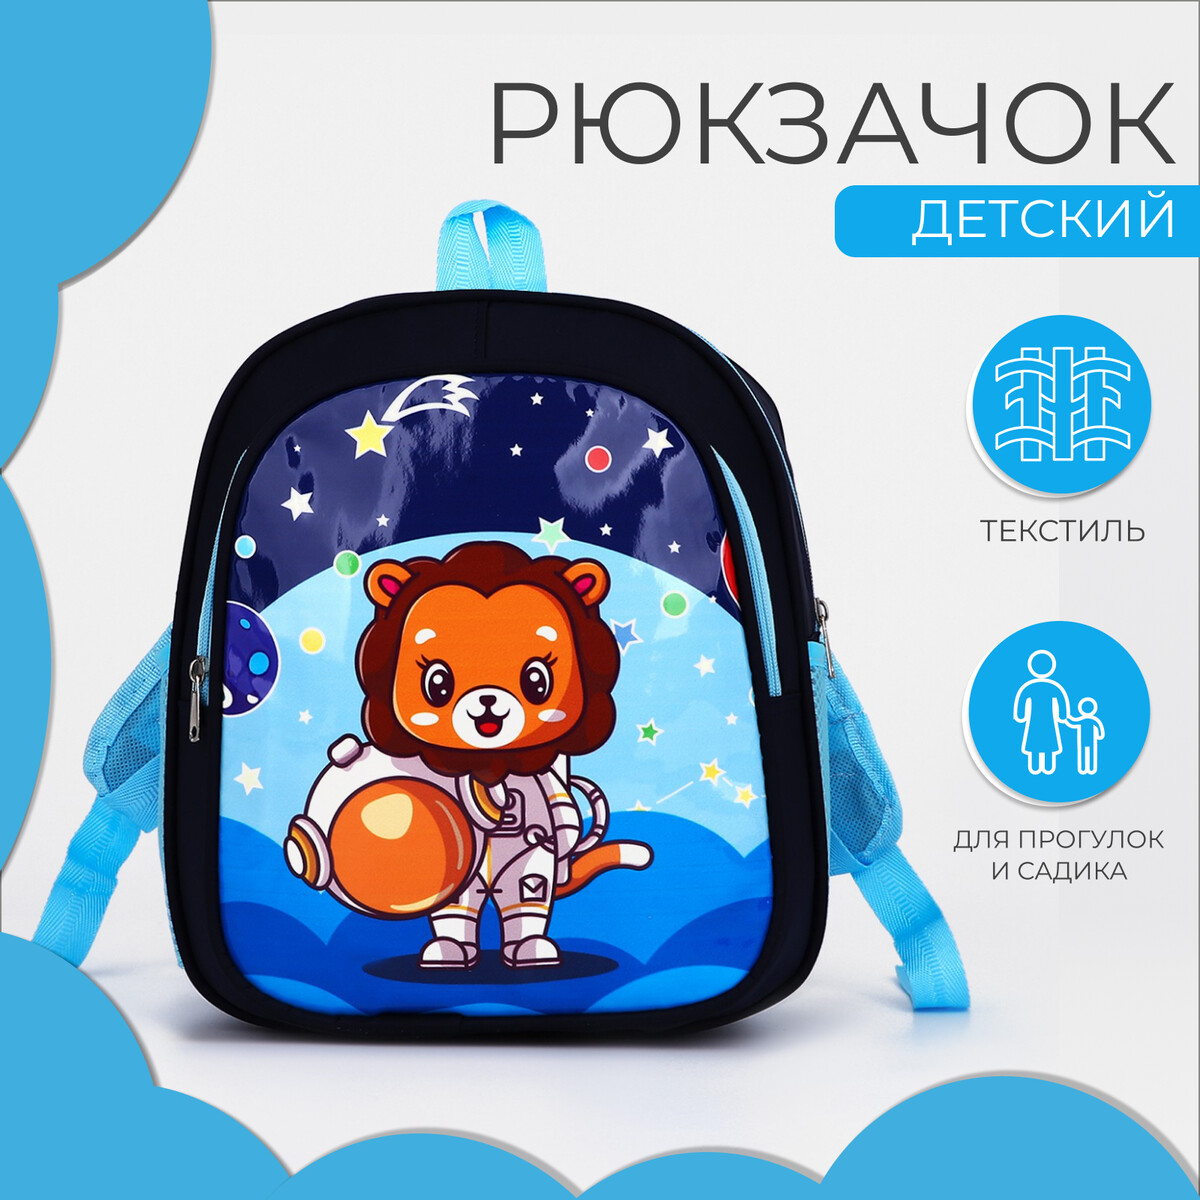 Рюкзак детский на молнии, 3 наружных кармана, цвет синий сумка поясная на молнии 3 наружных кармана